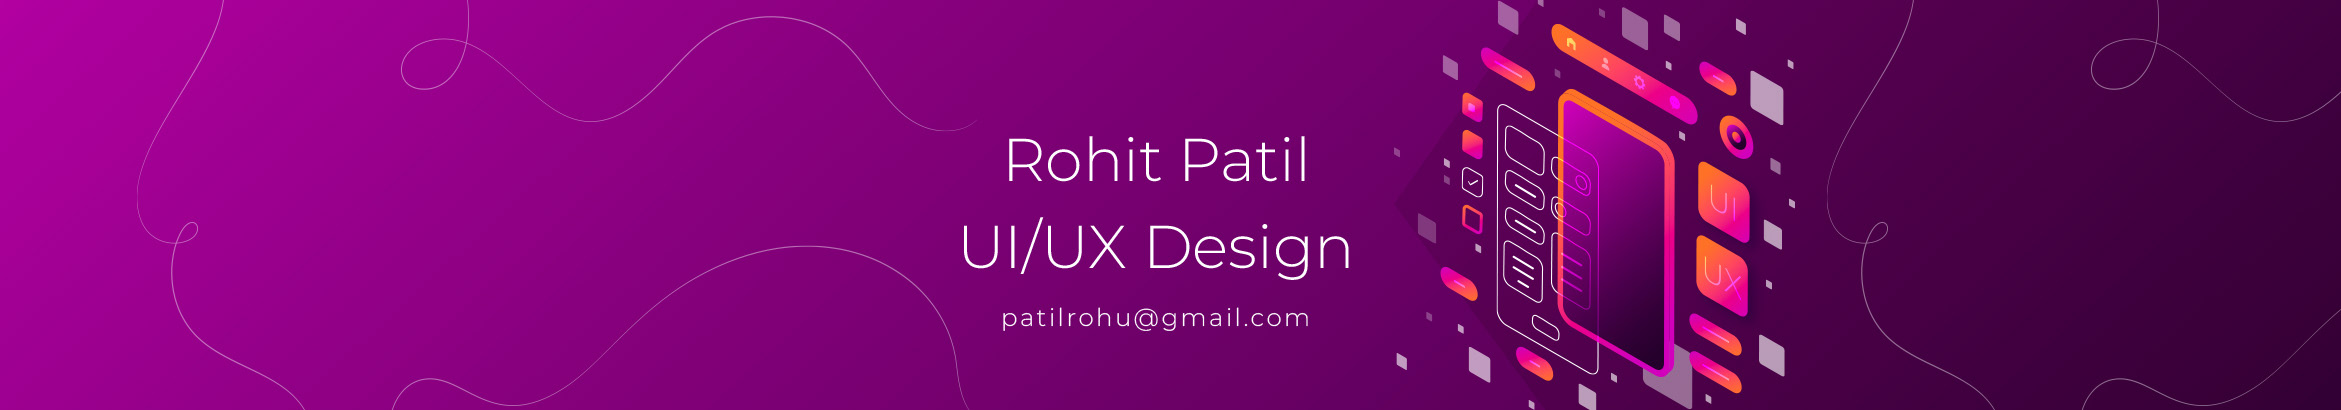 Rohit Patil profil başlığı